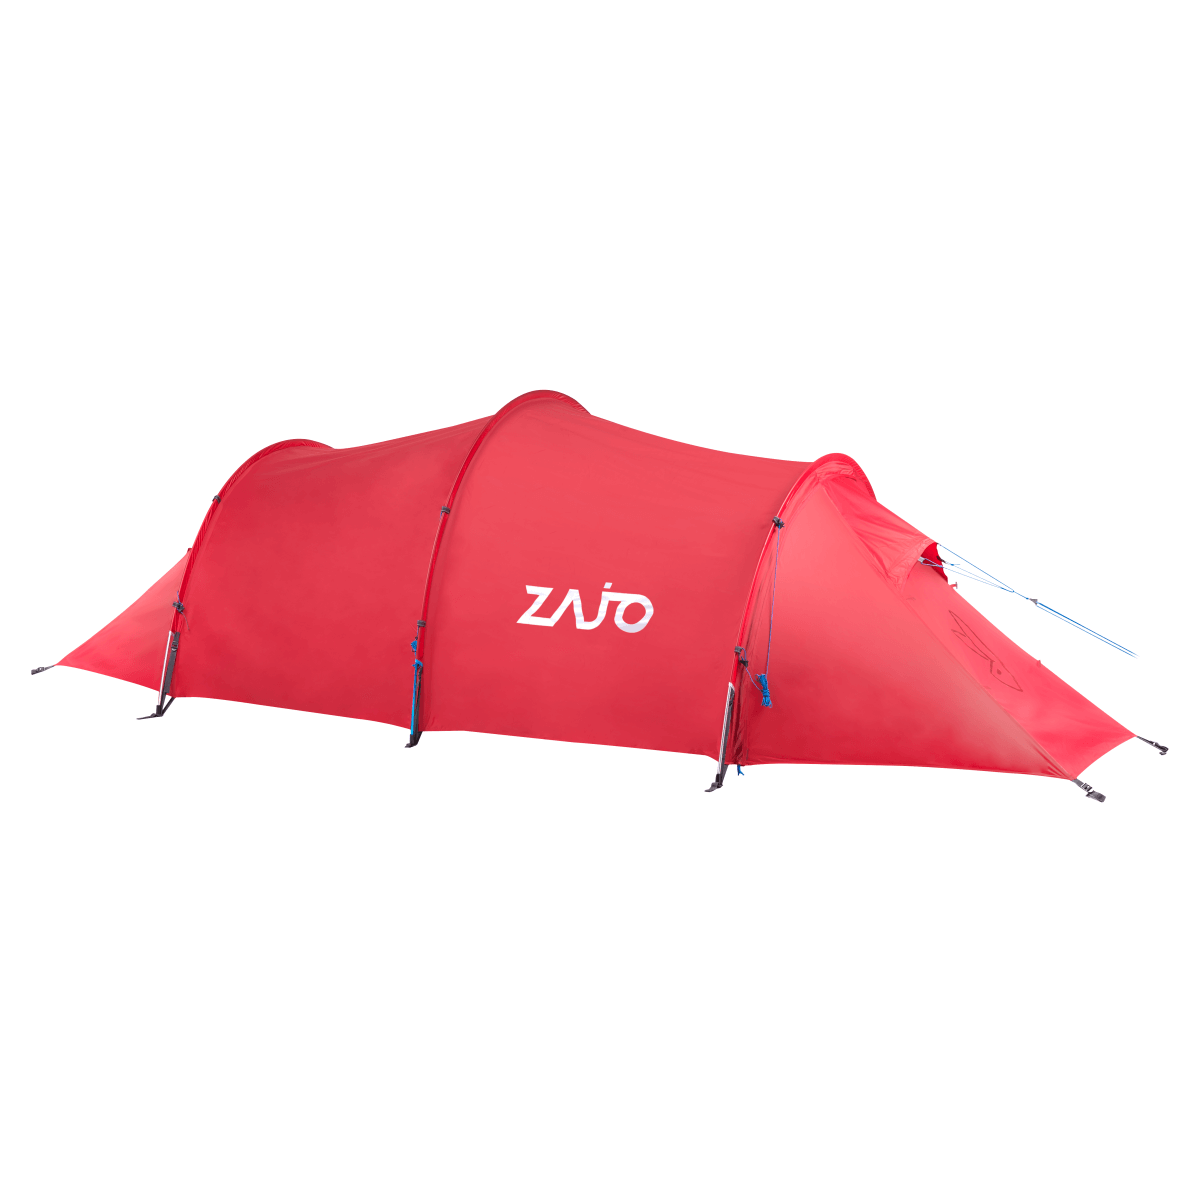 Stany Zajo Lapland 2 Tent